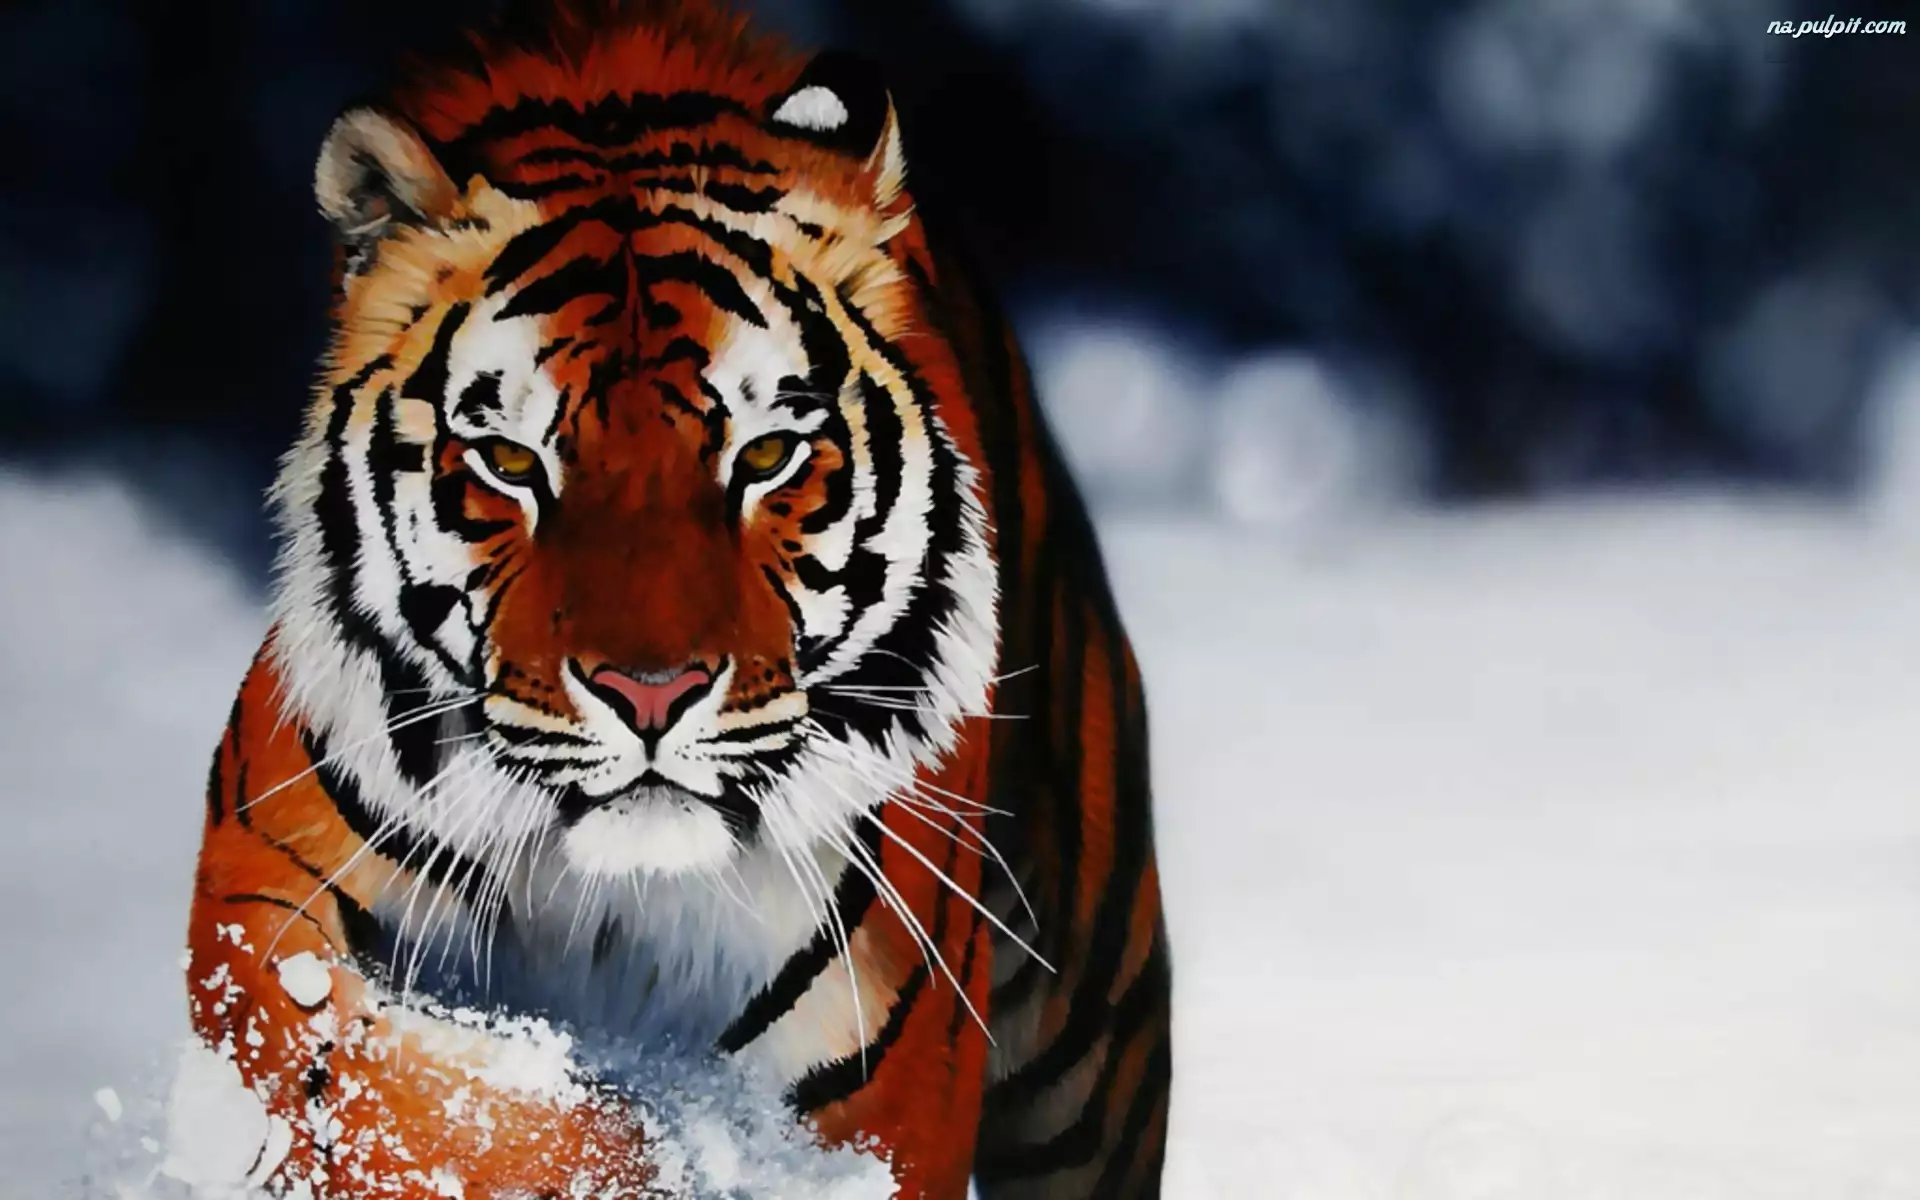 Śnieg, Tygrys, Zima